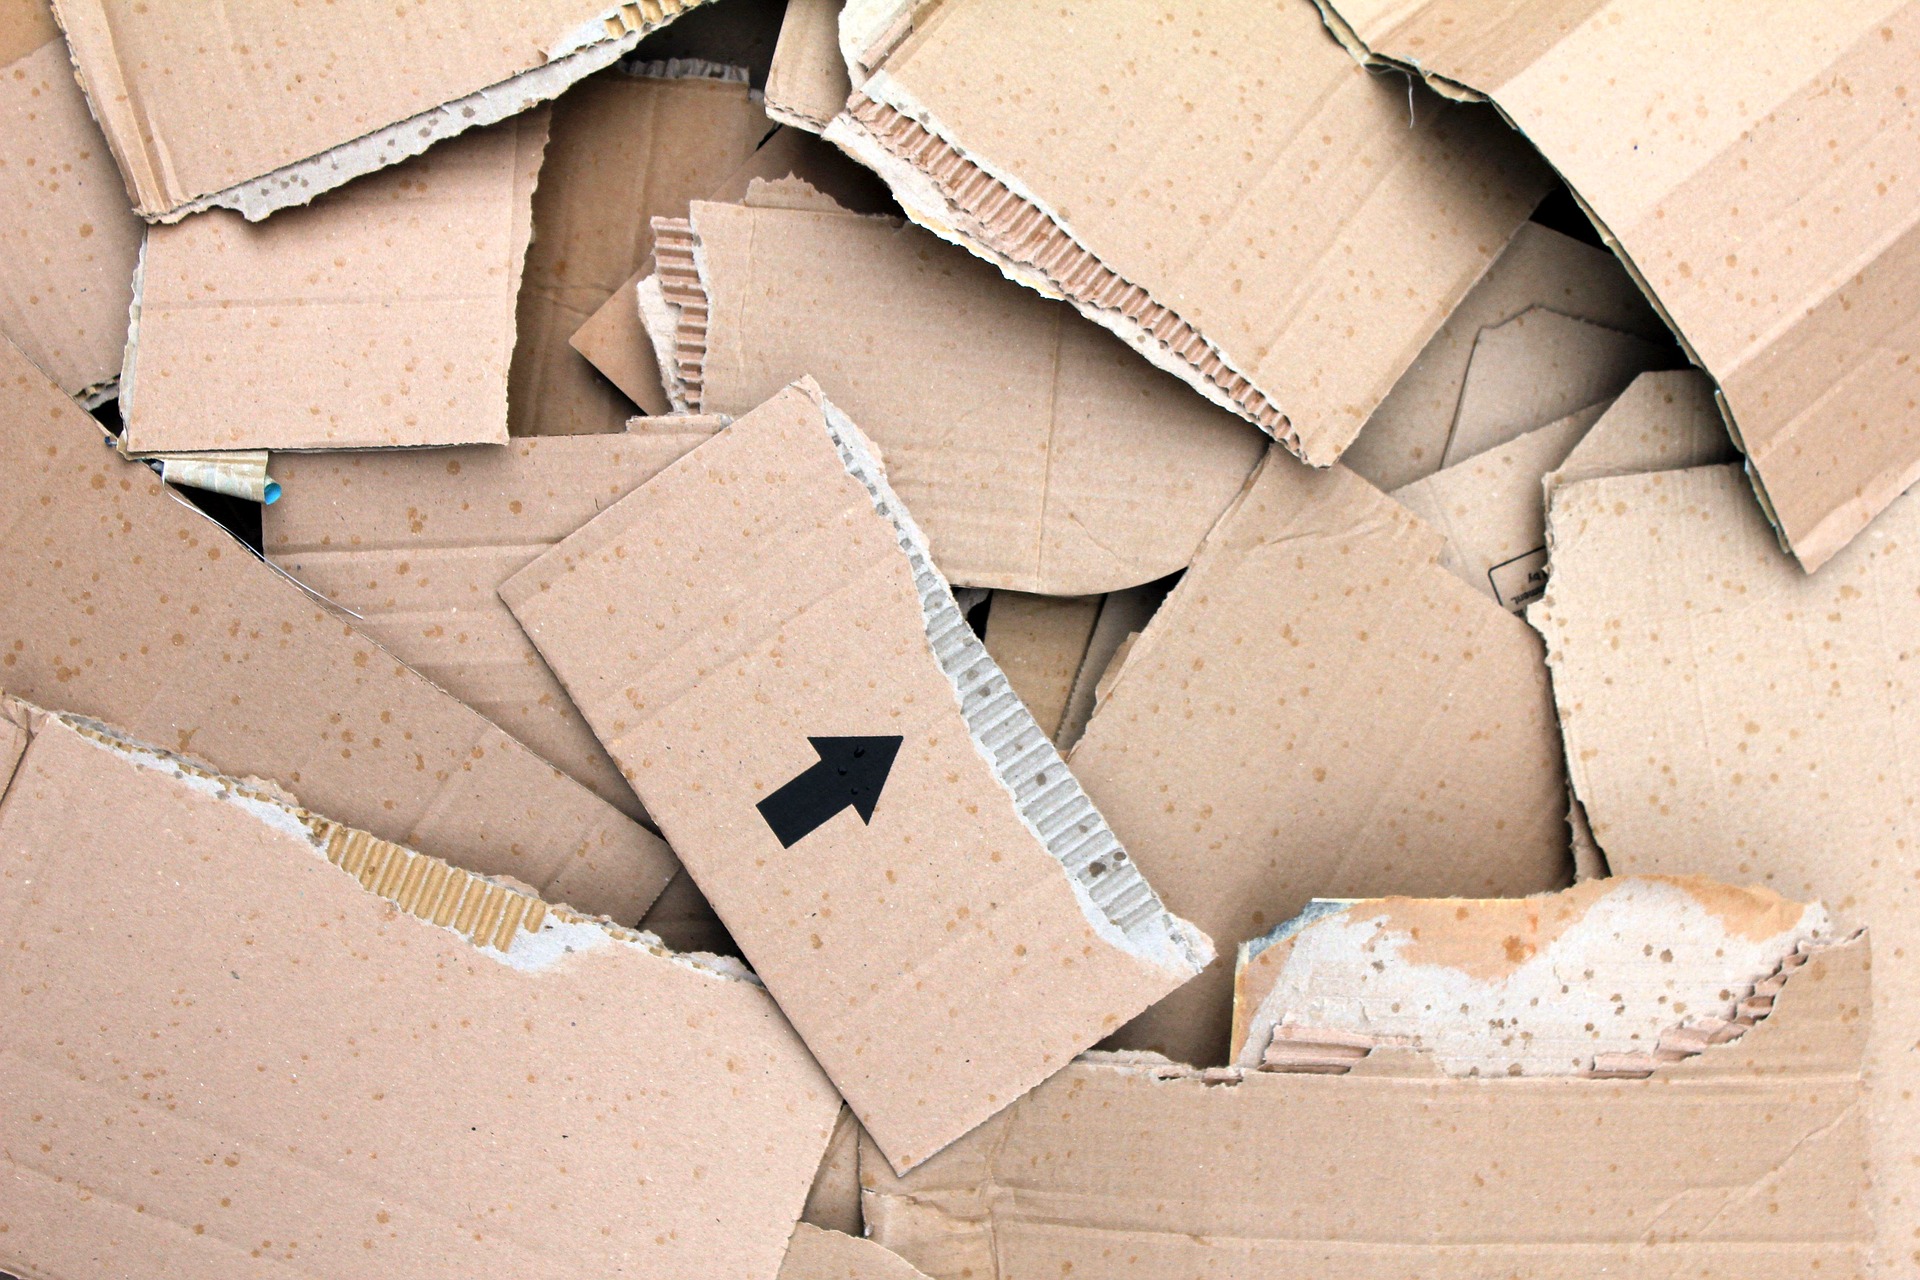 đánh giá tác động môi trường cho cơ sở sản xuất giấy từ phế liệu